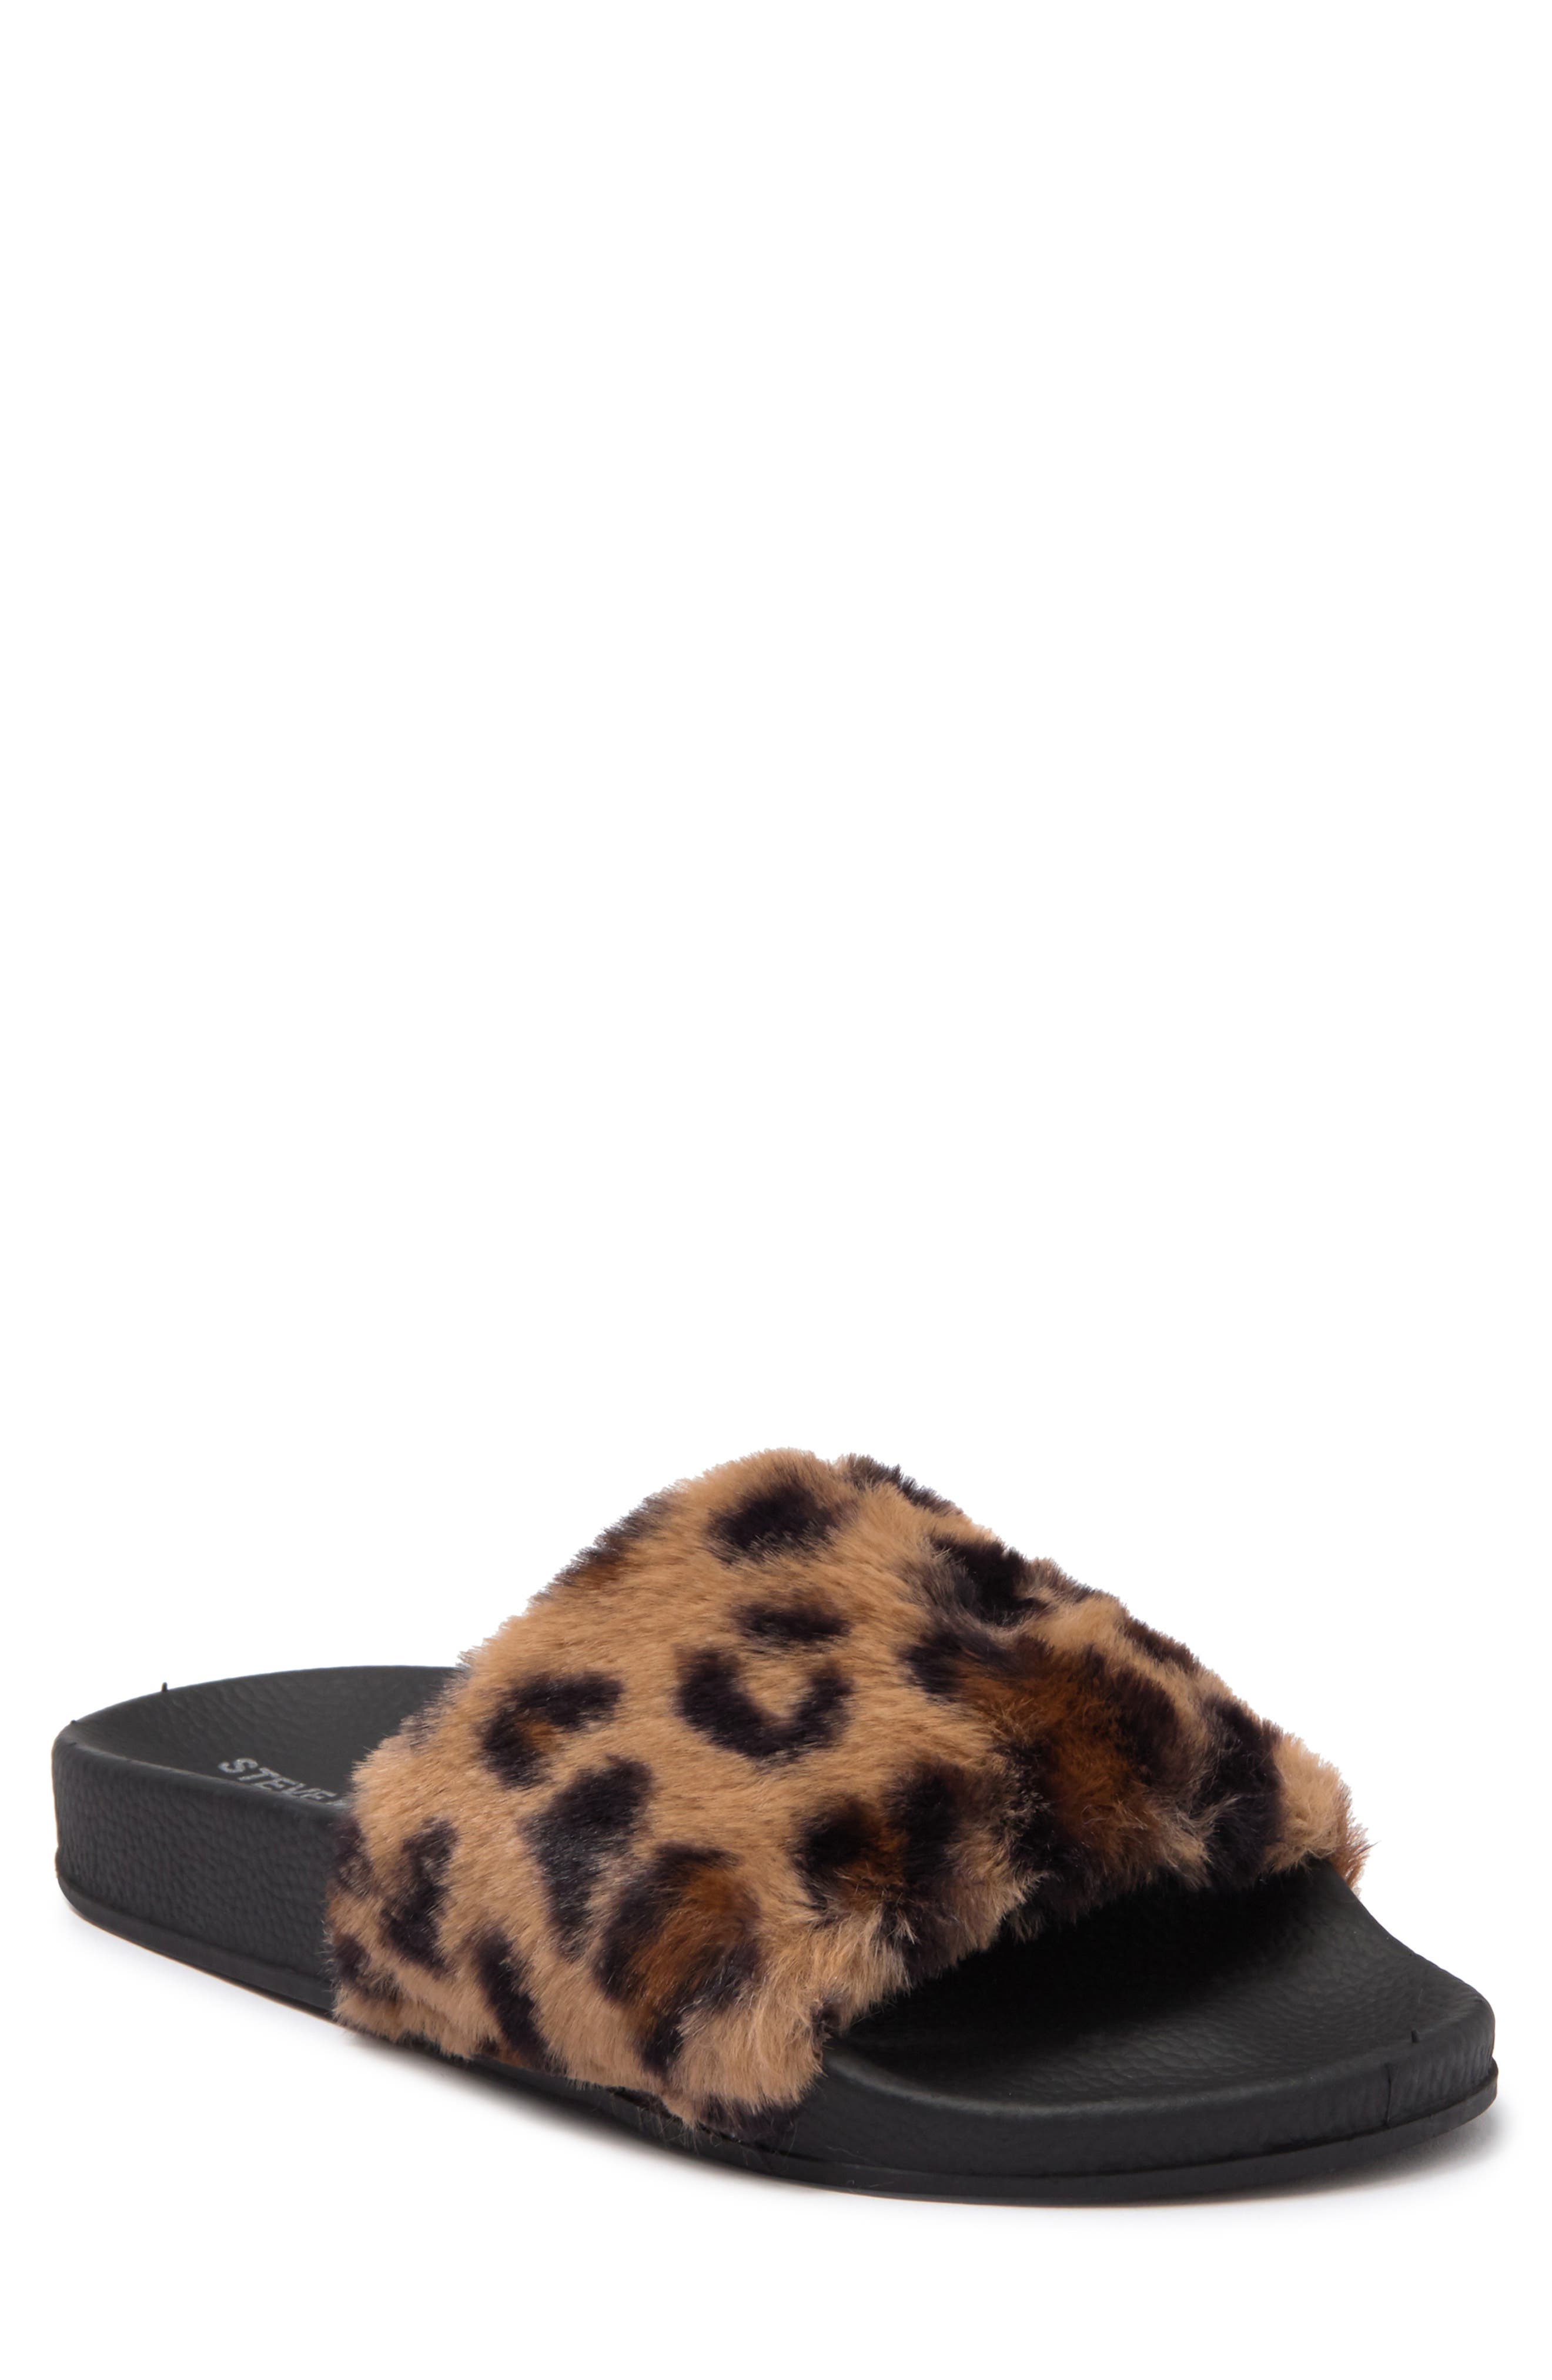 Steve Madden Kids' Smooth Faux Fur Slide Sandal In Leopard